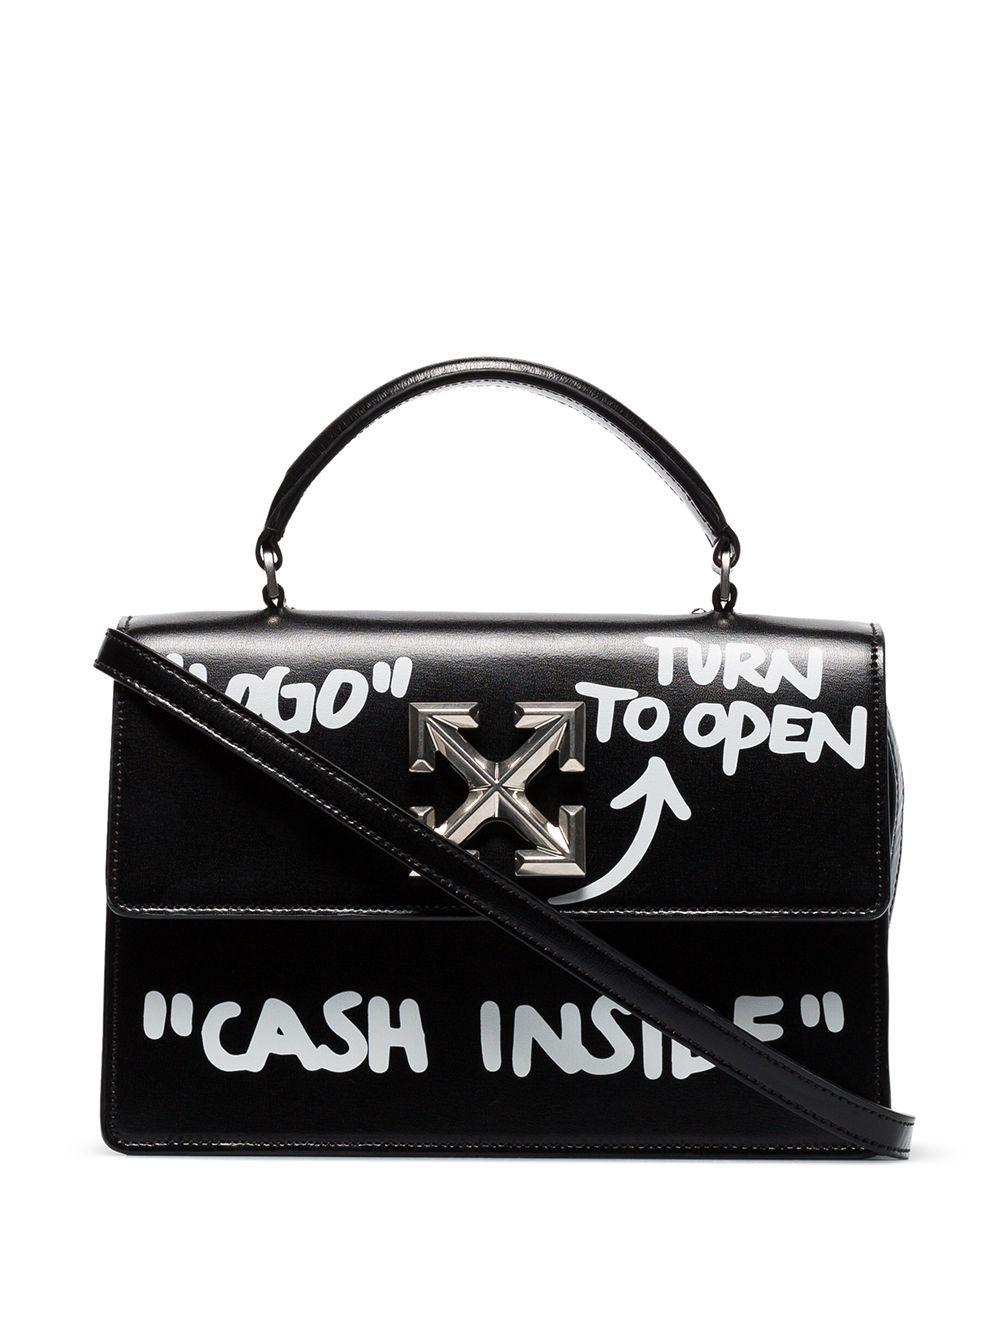 Off-White c/o Virgil Abloh Mini Box Handle Bag w/ Tags - Black Handle Bags,  Handbags - WOWVA53892